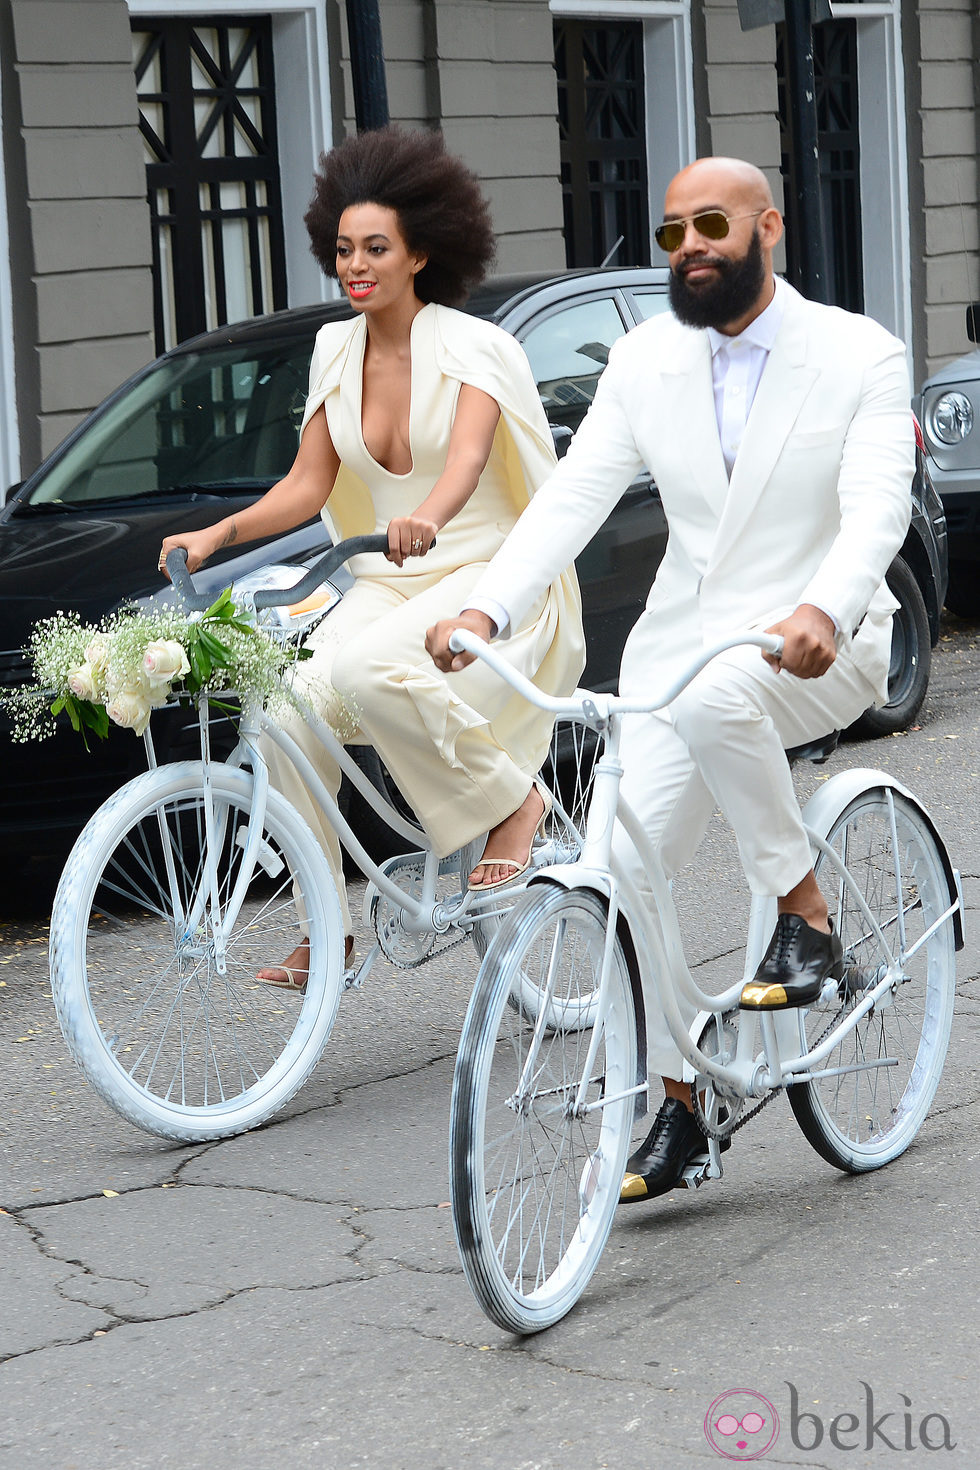 Solange Knowles y Alan Ferguson el día de su boda en Nueva Orleans